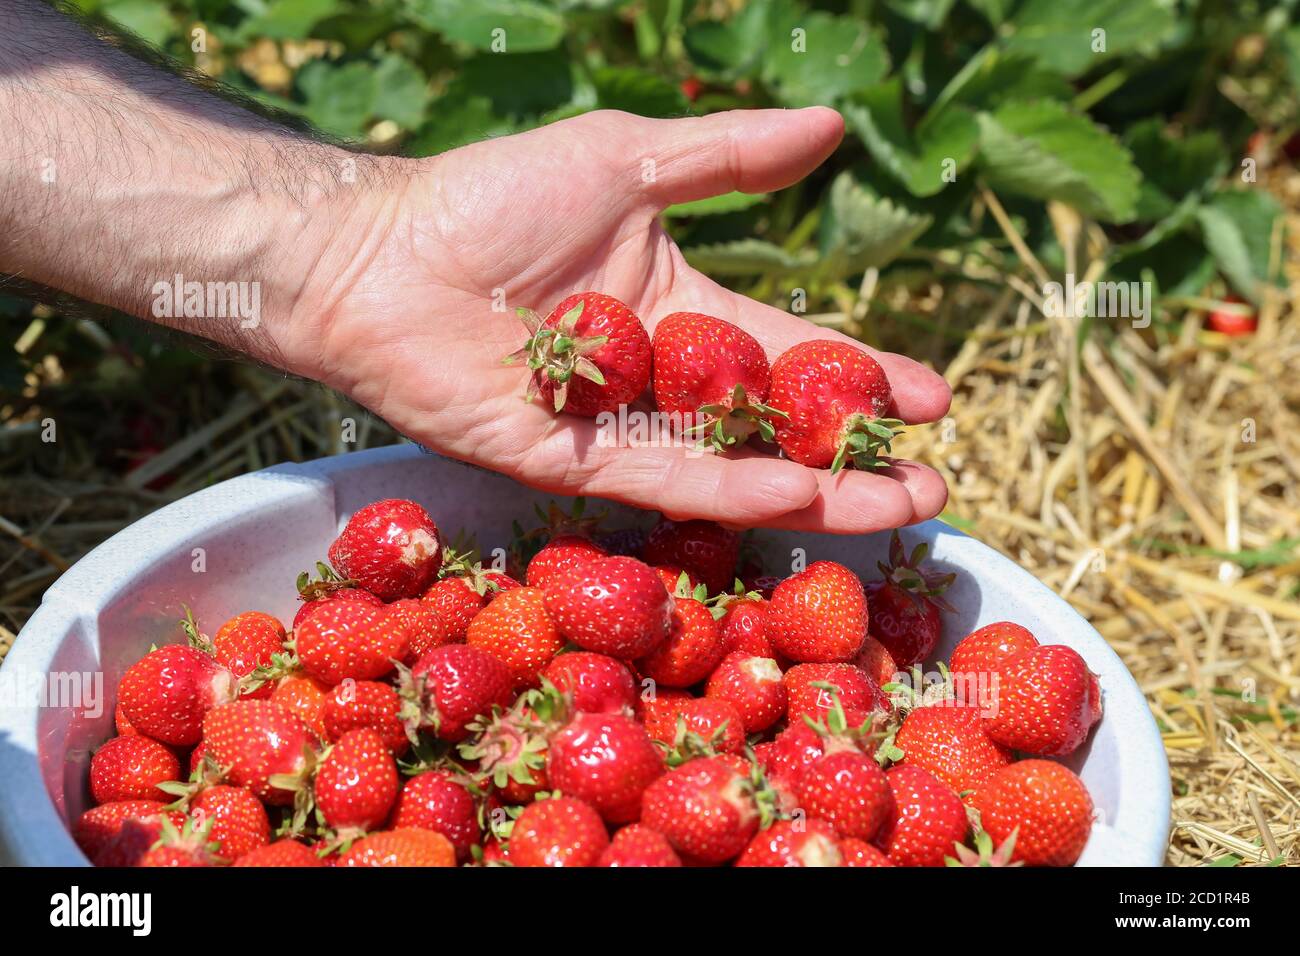 Männliche Hand hält Erdbeeren über einer Schüssel mit frischen gefüllt Erdbeeren Stockfoto